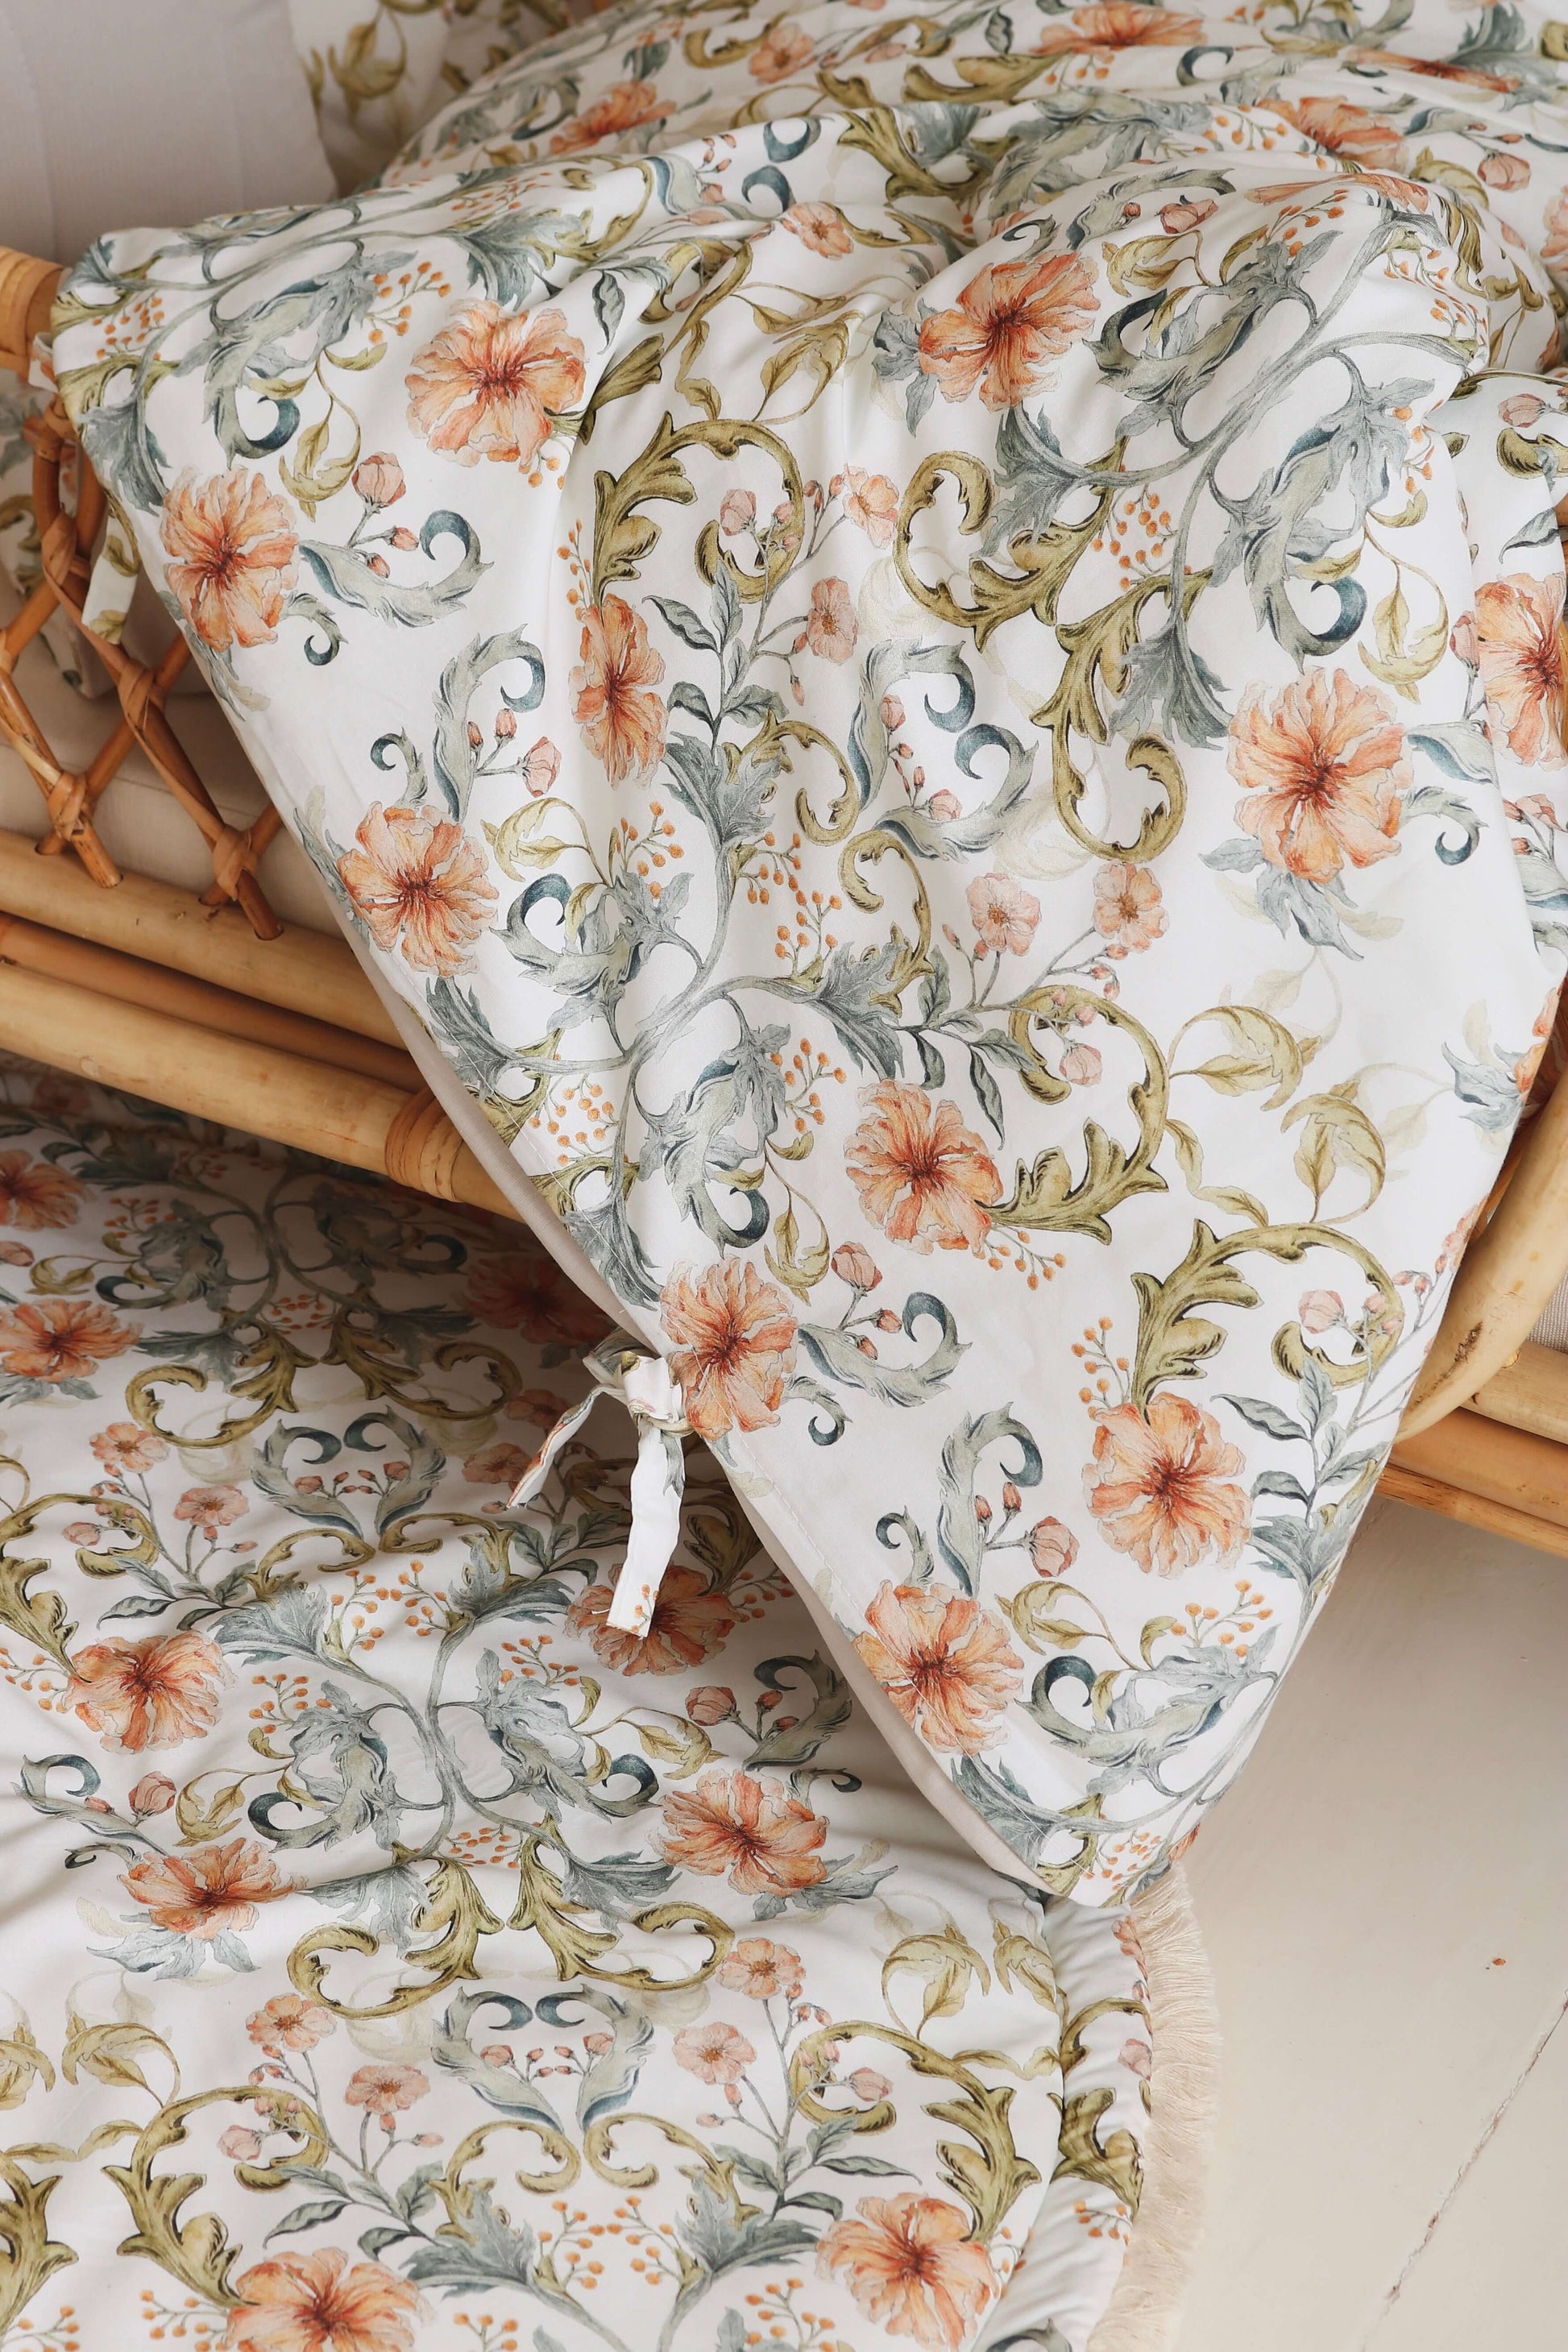 Matuu - Tangled  flowers - bedding set, duvet cover, case pillow